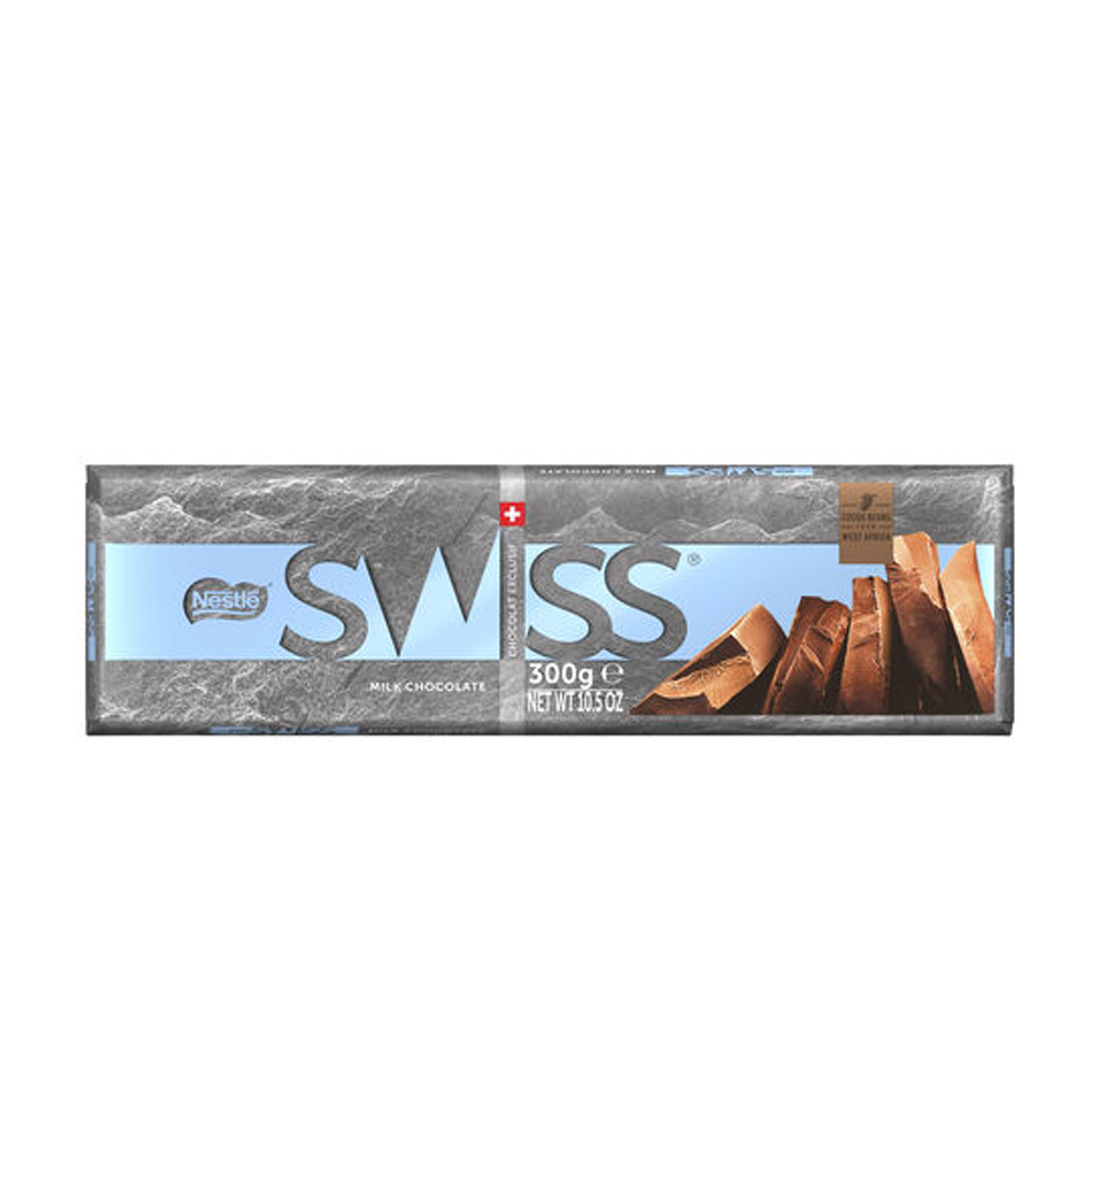 Nestle Swiss Milk Chocolate 300g